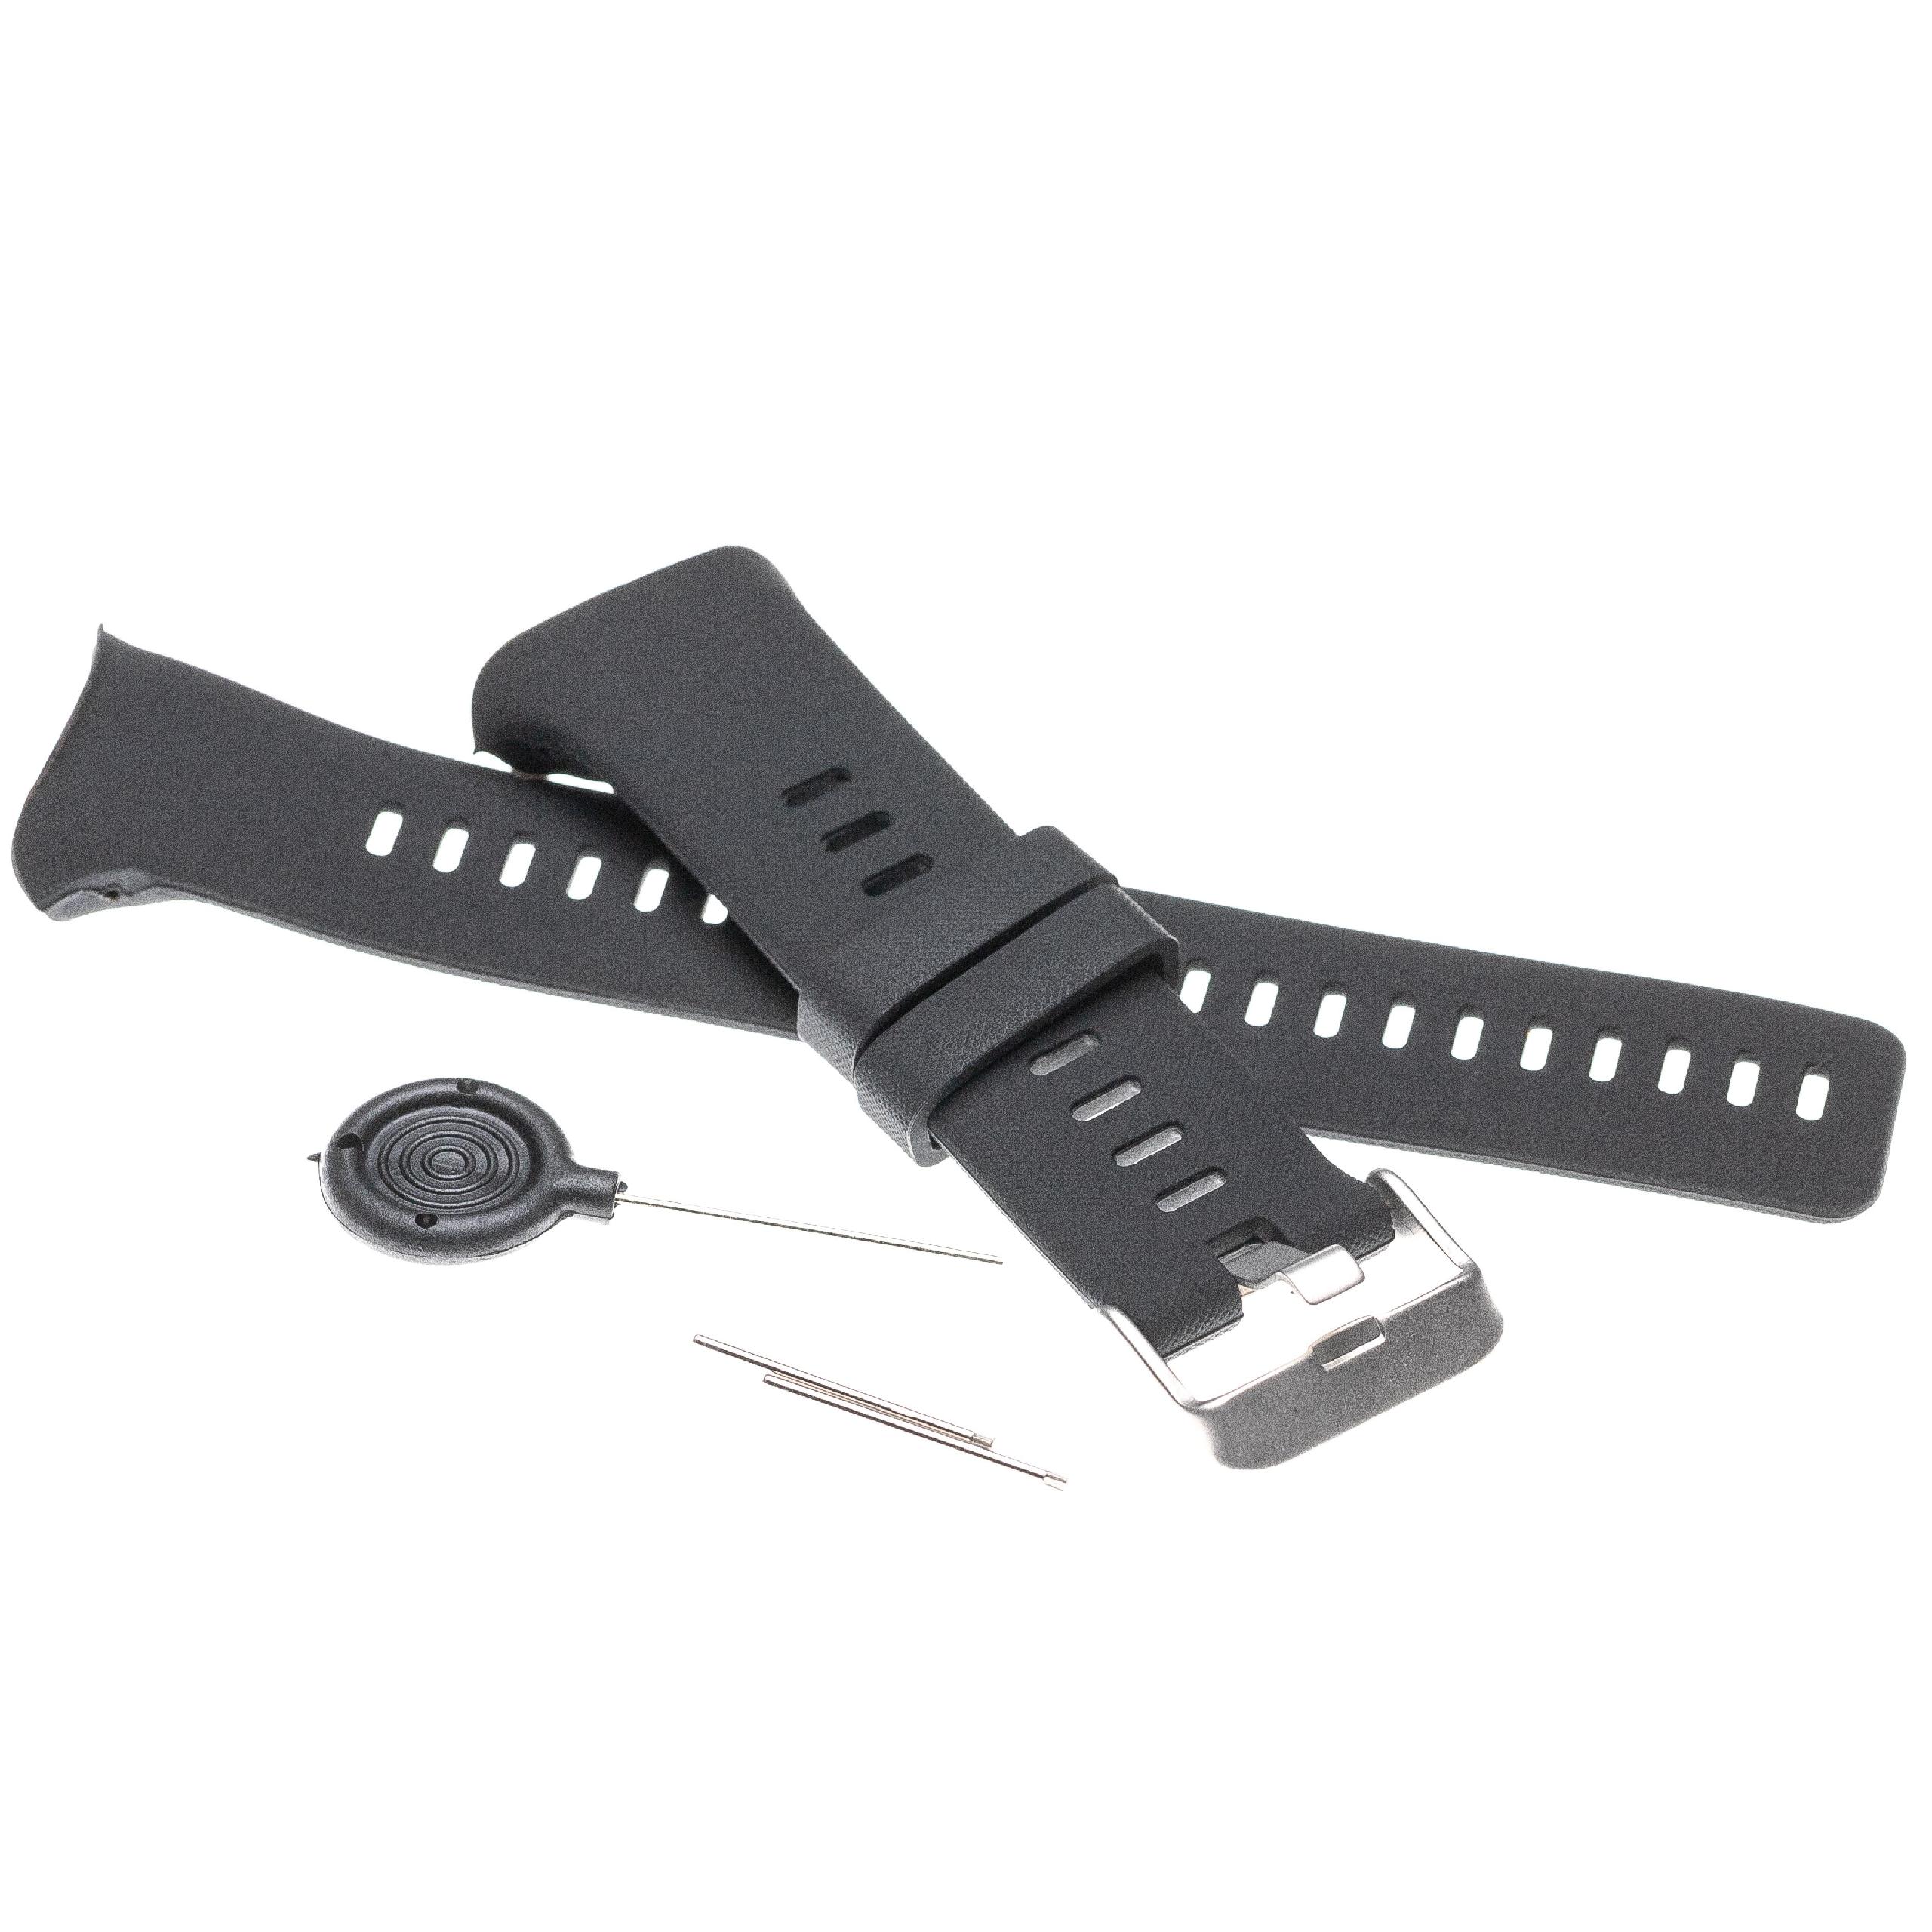 Pasek do smartwatch Polar Vantage - dł. 12,6 + 8,7 cm, czarny